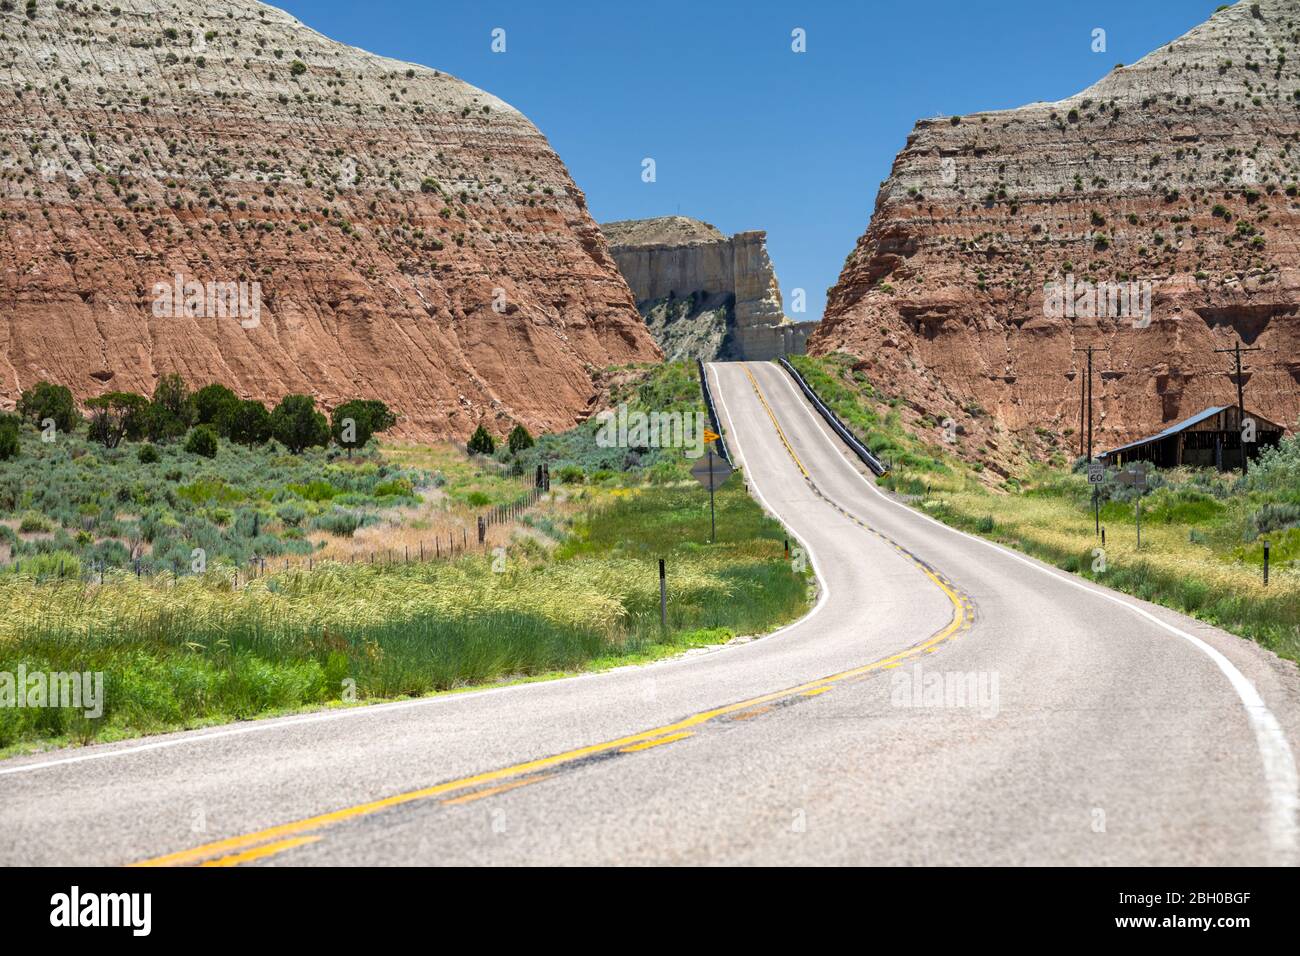 La célèbre route panoramique 12 serpente à travers un paysage de montagne dans une journée d'été lumineuse Banque D'Images